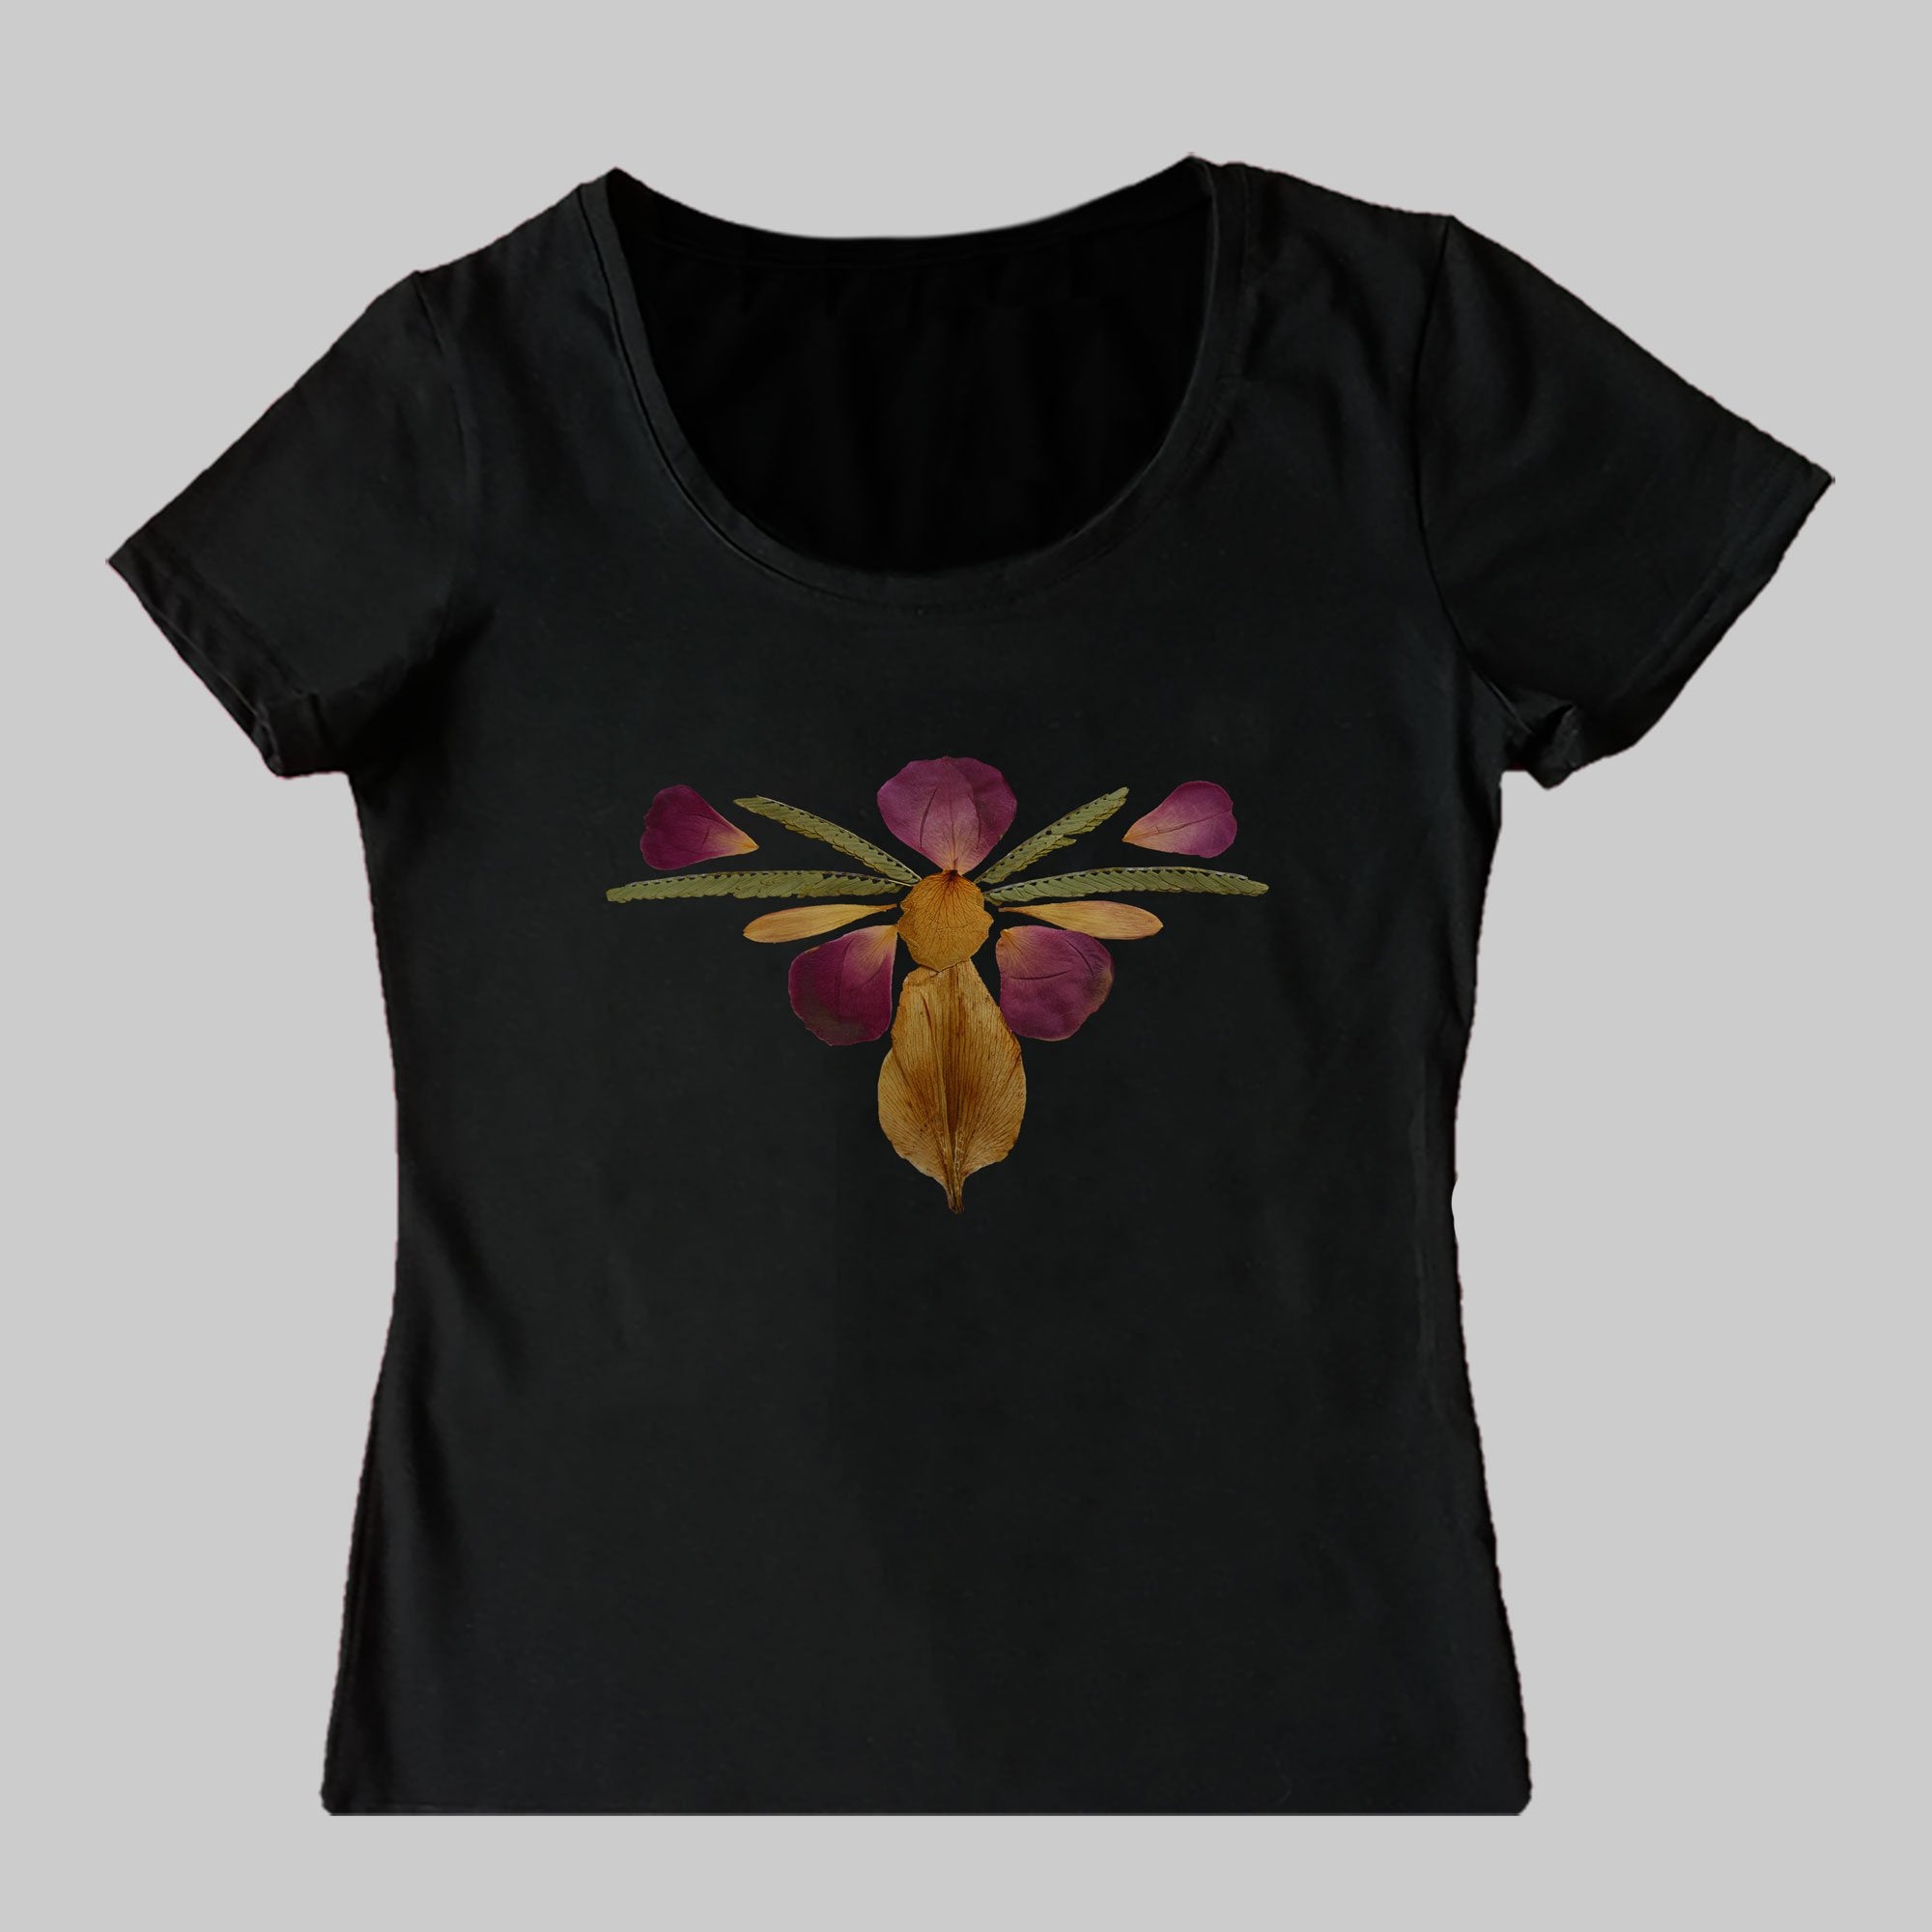 Butterfly-Like Ornament T-Shirt (Women's)